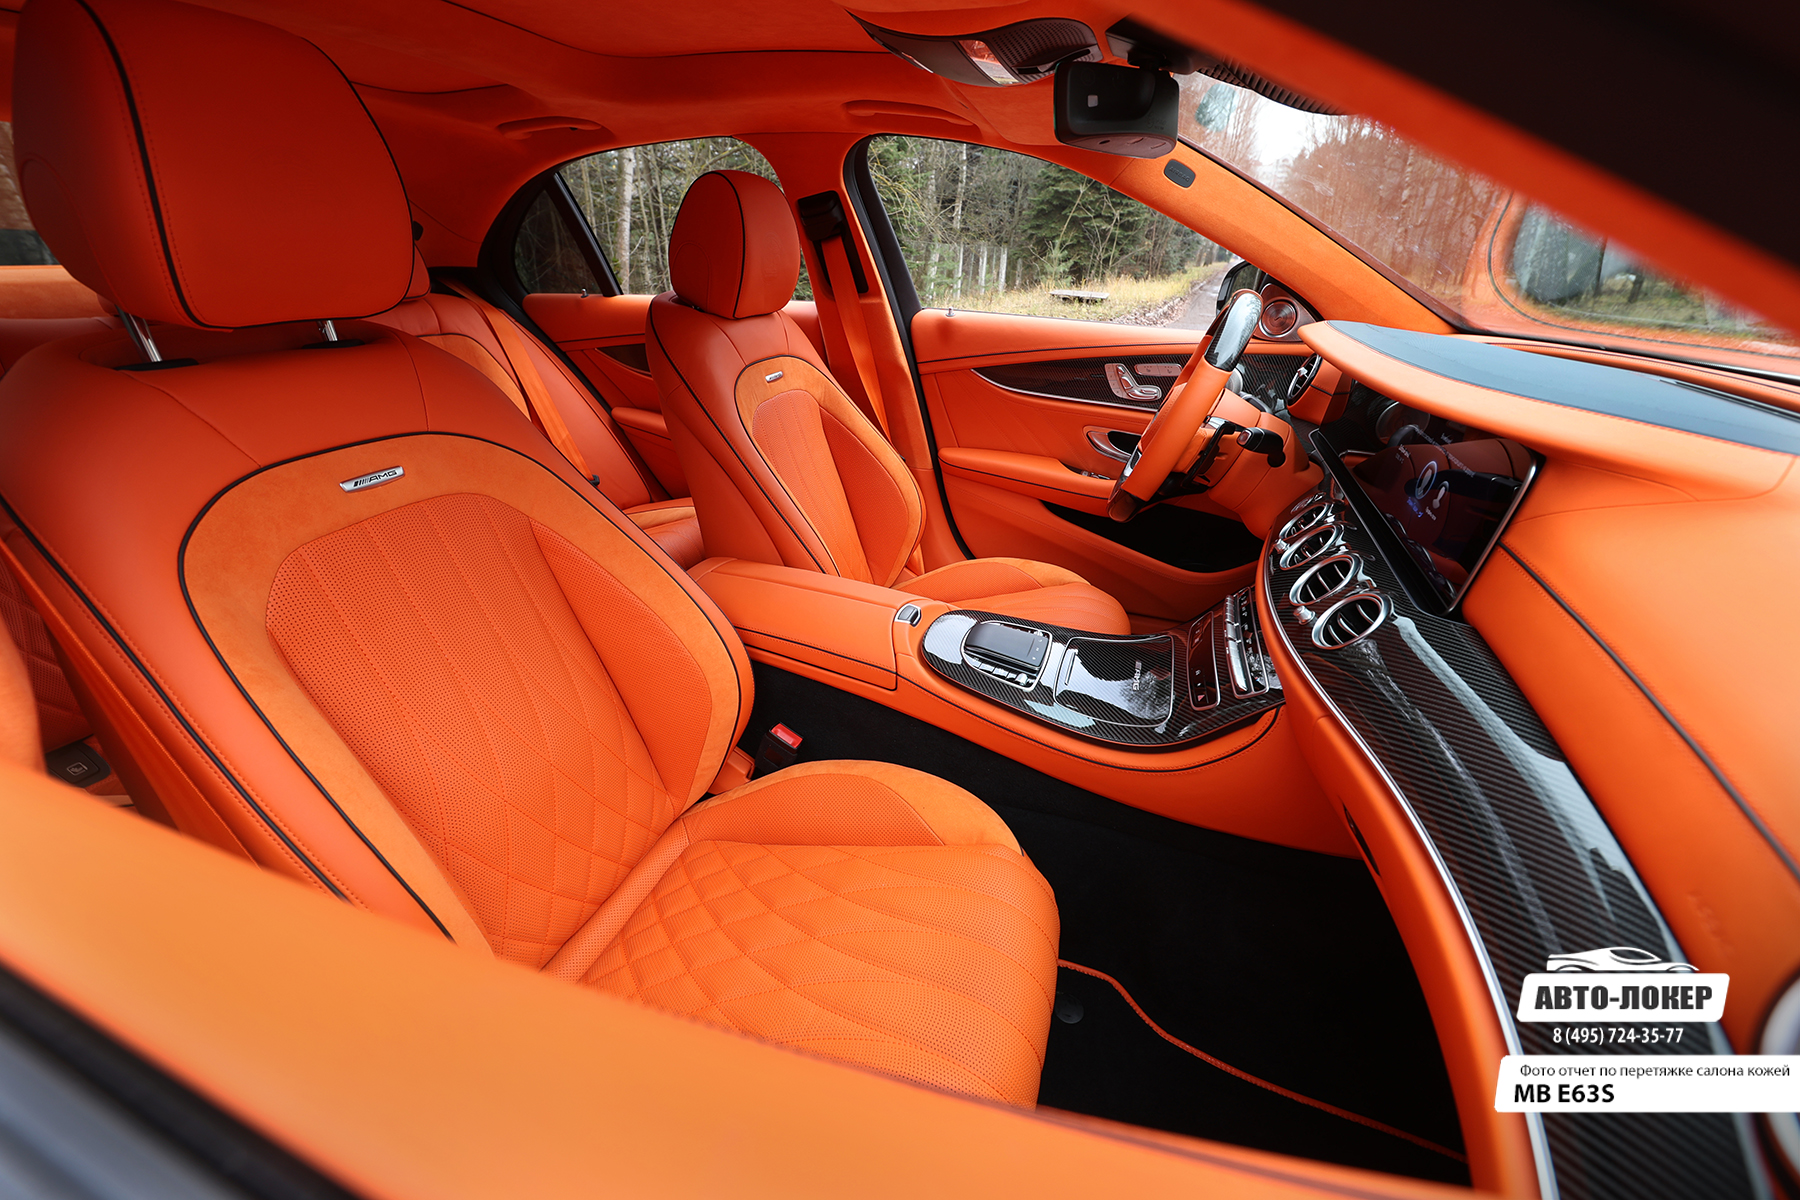 Перетяжка передних сидений салона MB E63S (W213) оранжевой кожей